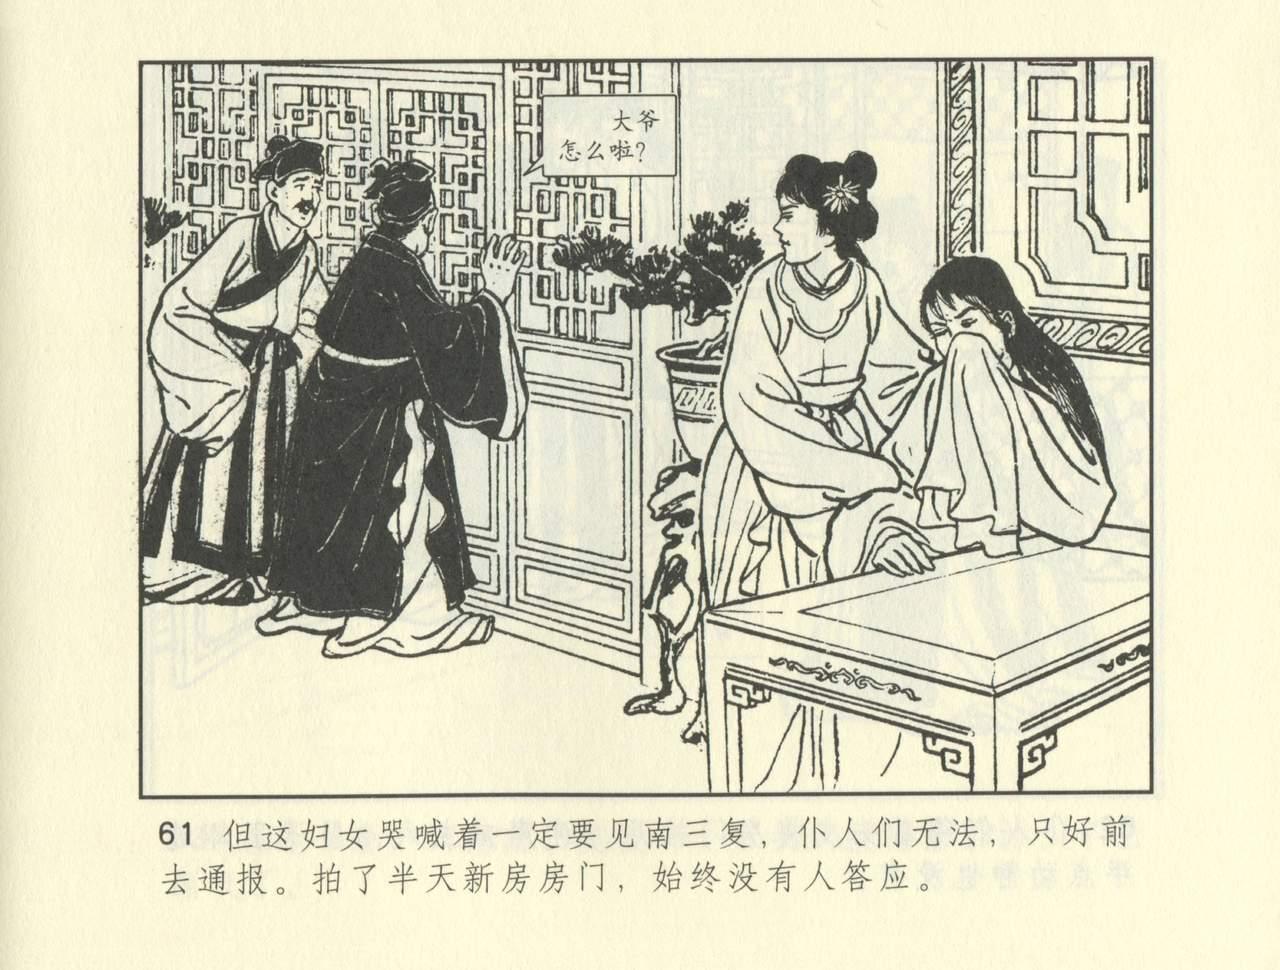 聊斋志异 张玮等绘 天津人民美术出版社 卷二十一 ~ 三十 270